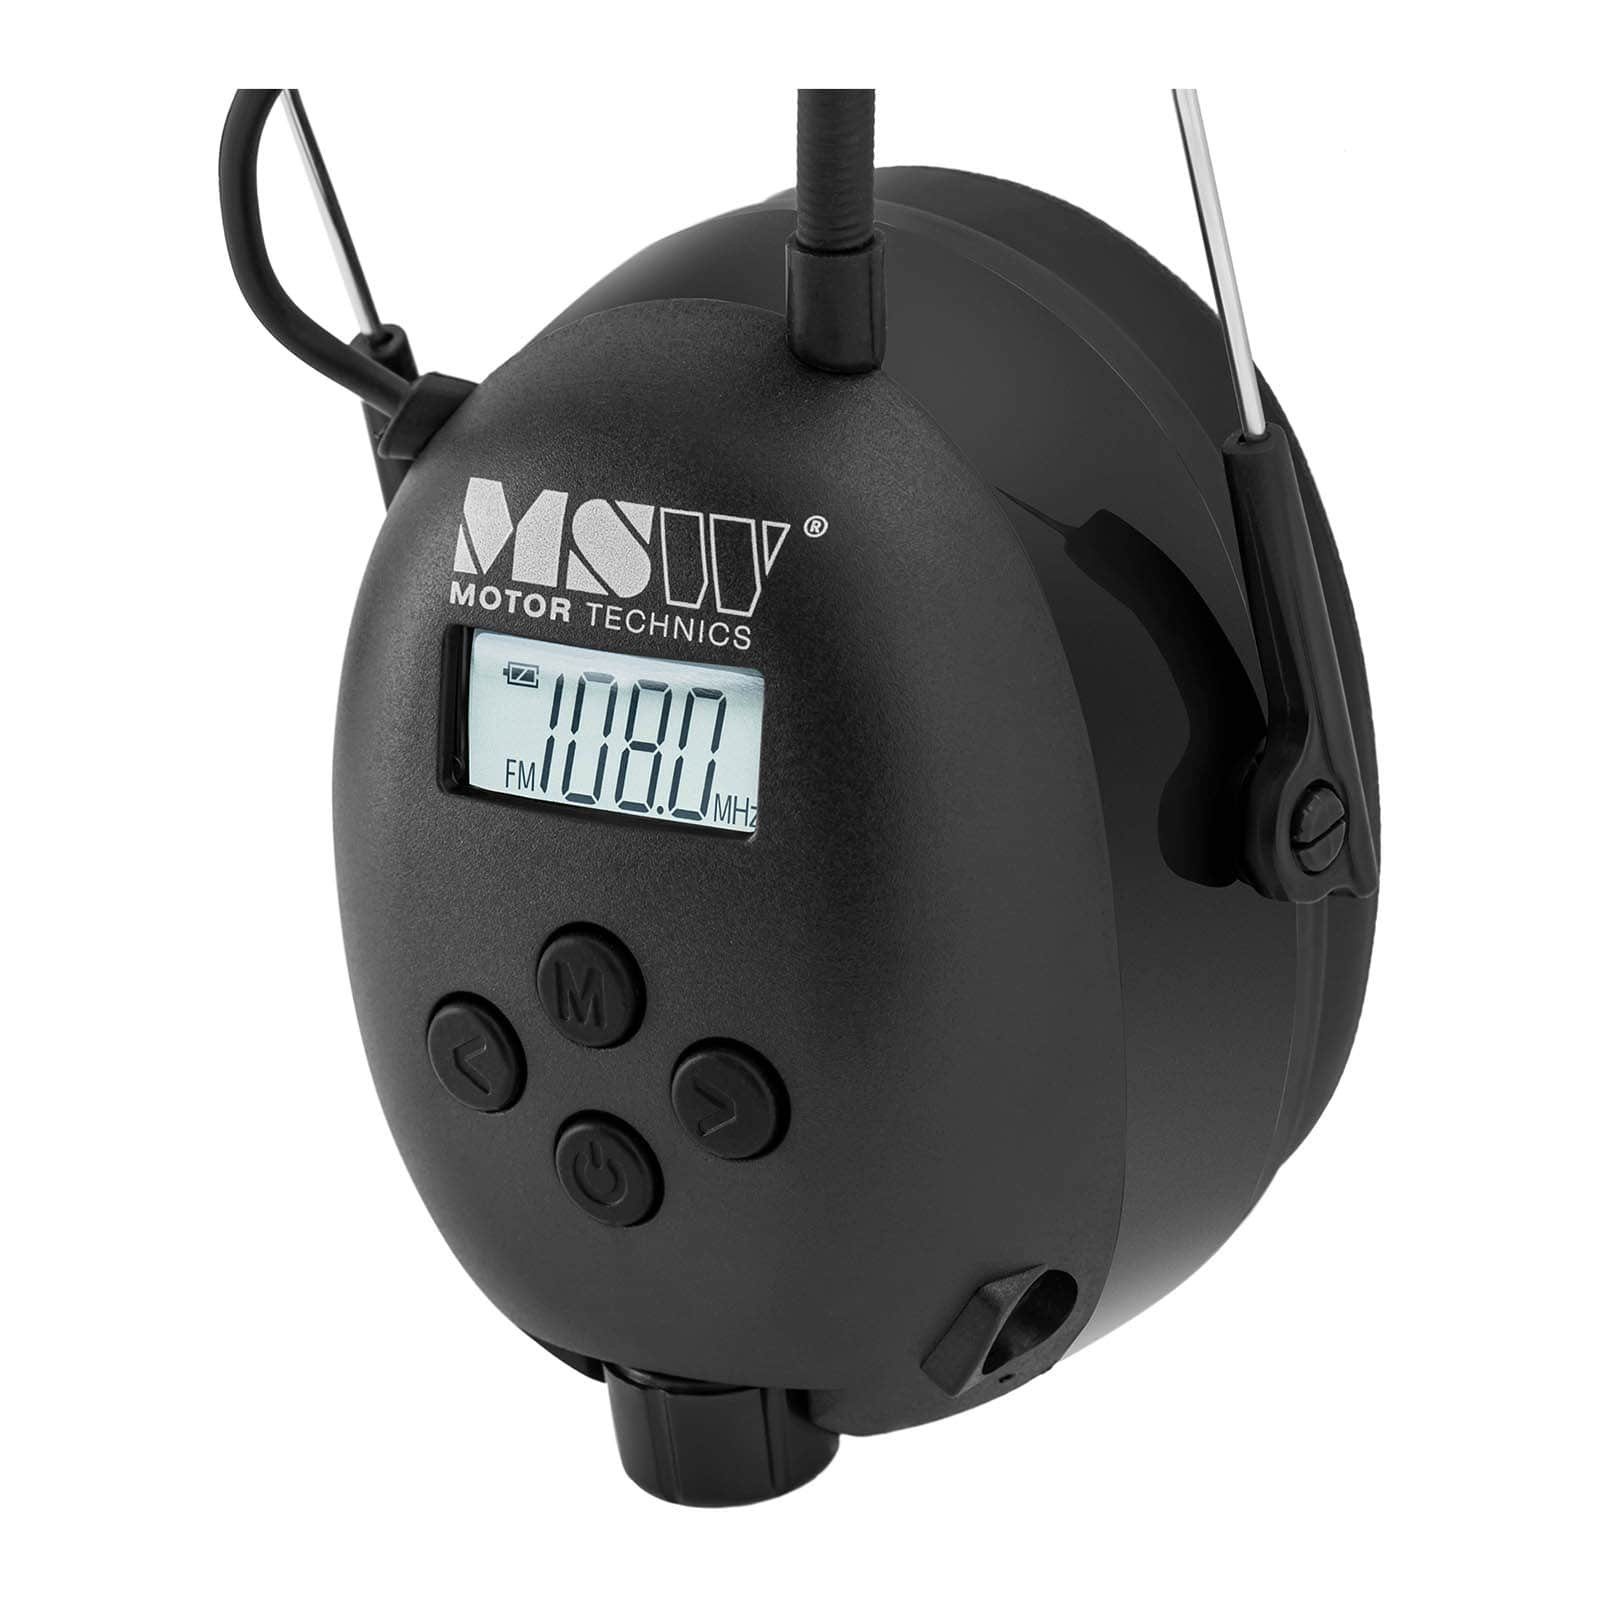 Lärmschutzkopfhörer LCD-Display Mikrofon Kapselgehörschutz Bluetooth MSW